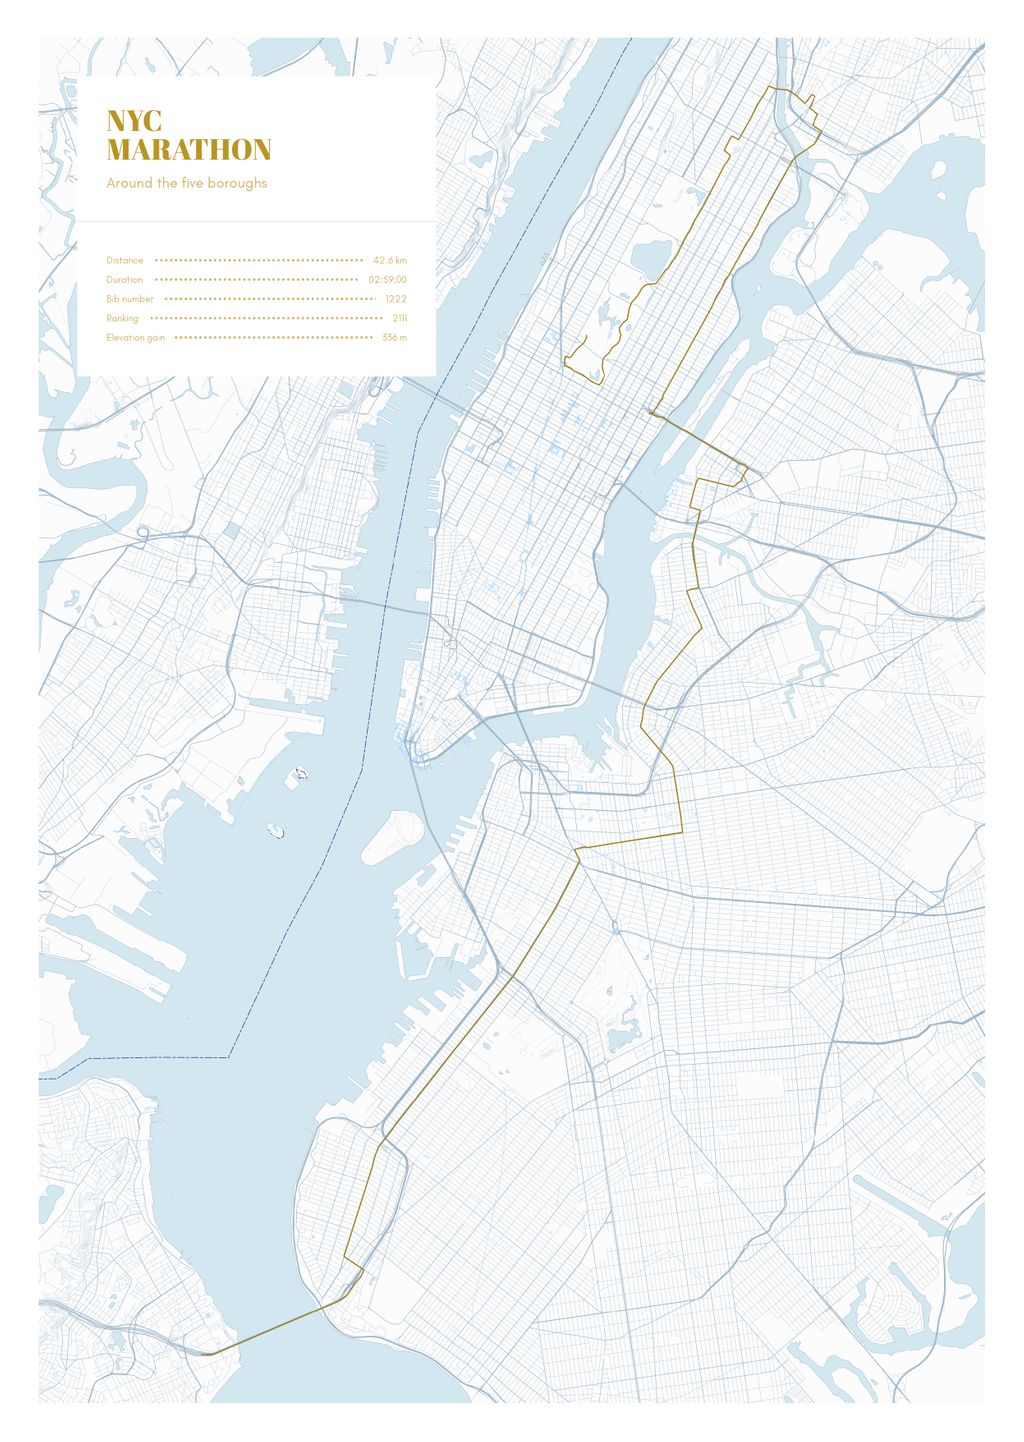 Póster con un mapa de NYC 
Marathon